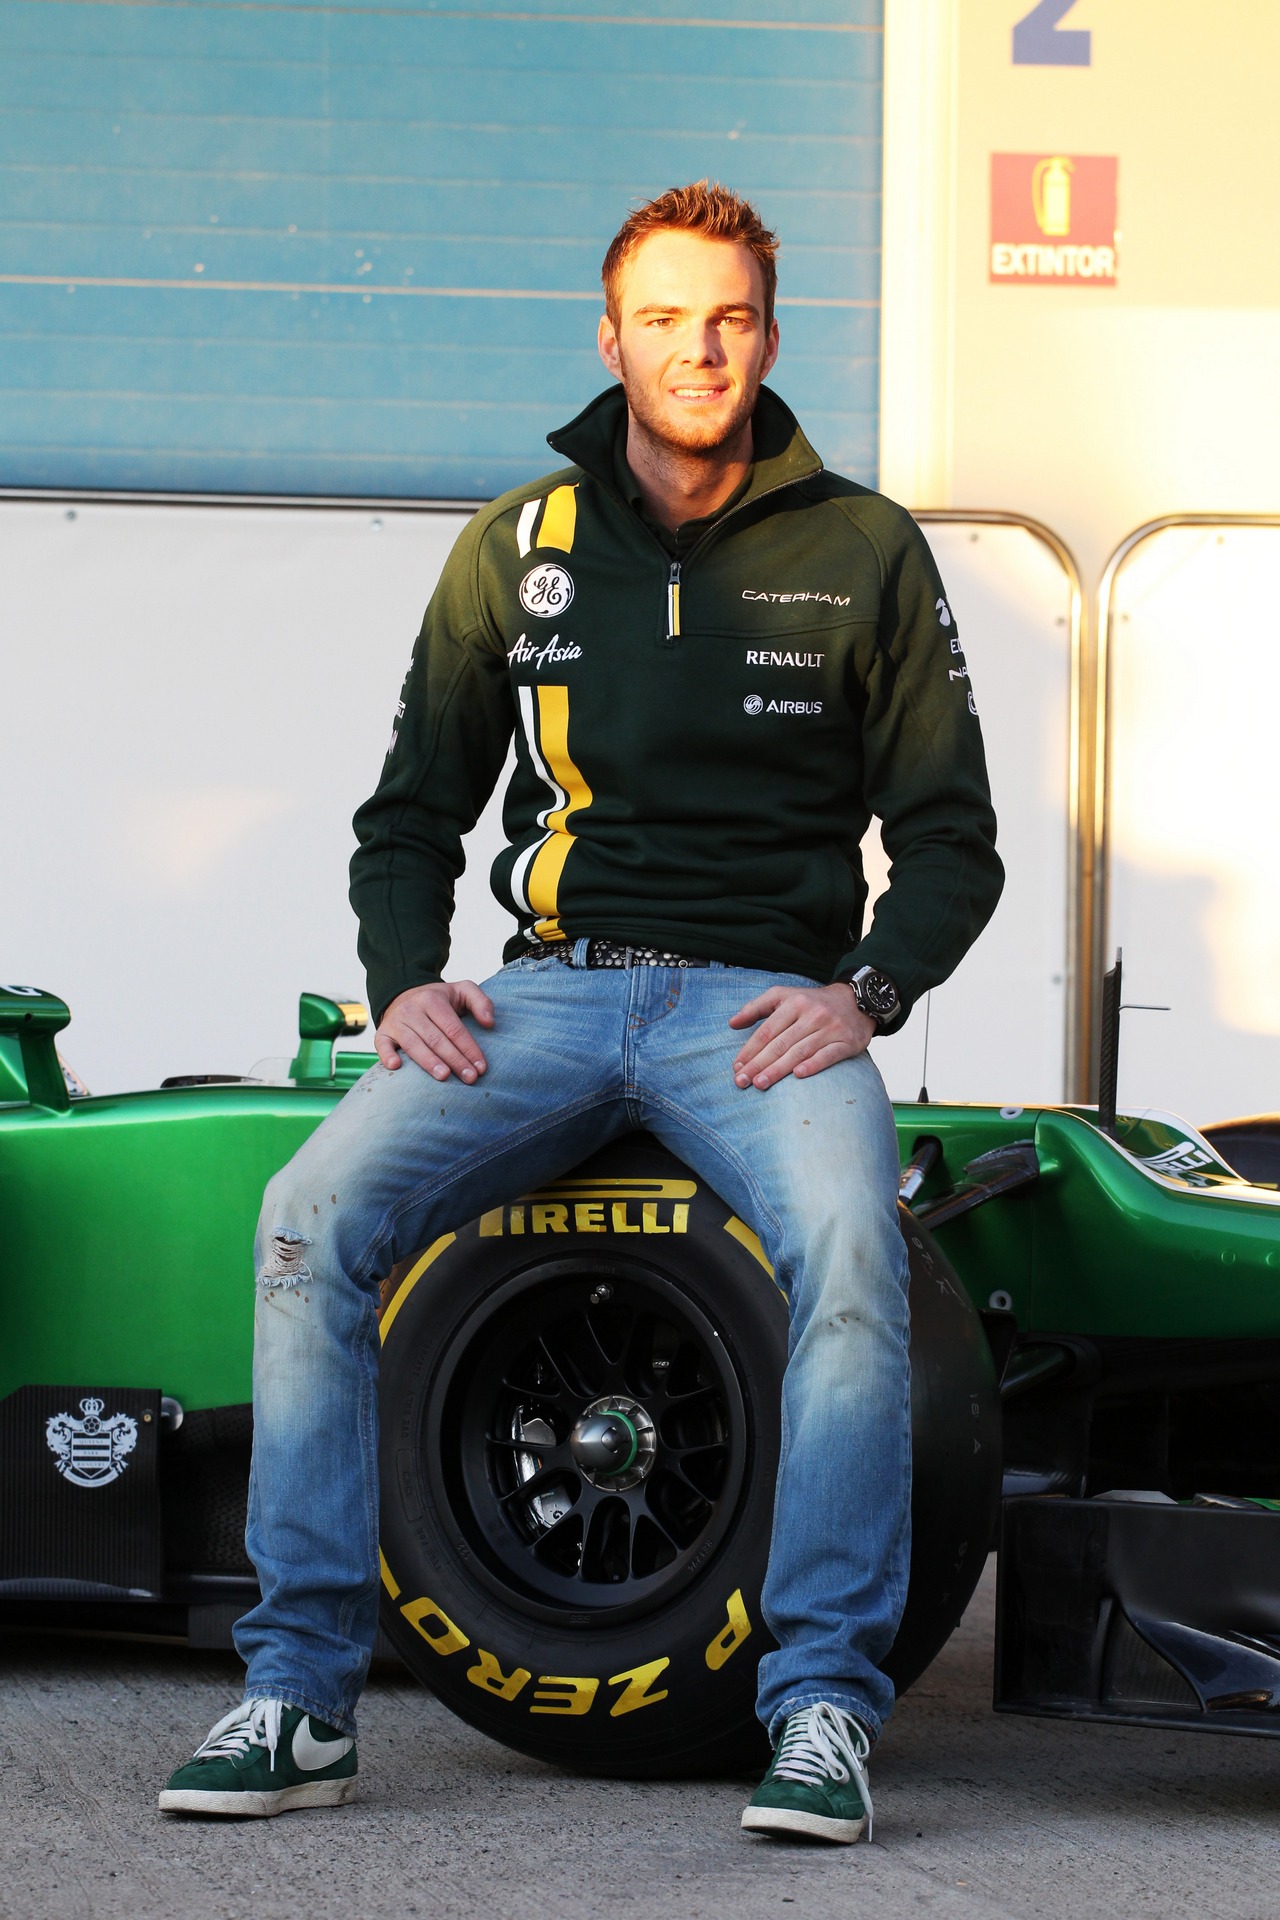 Giedo van der Garde (NLD) Caterham F1 Team.
